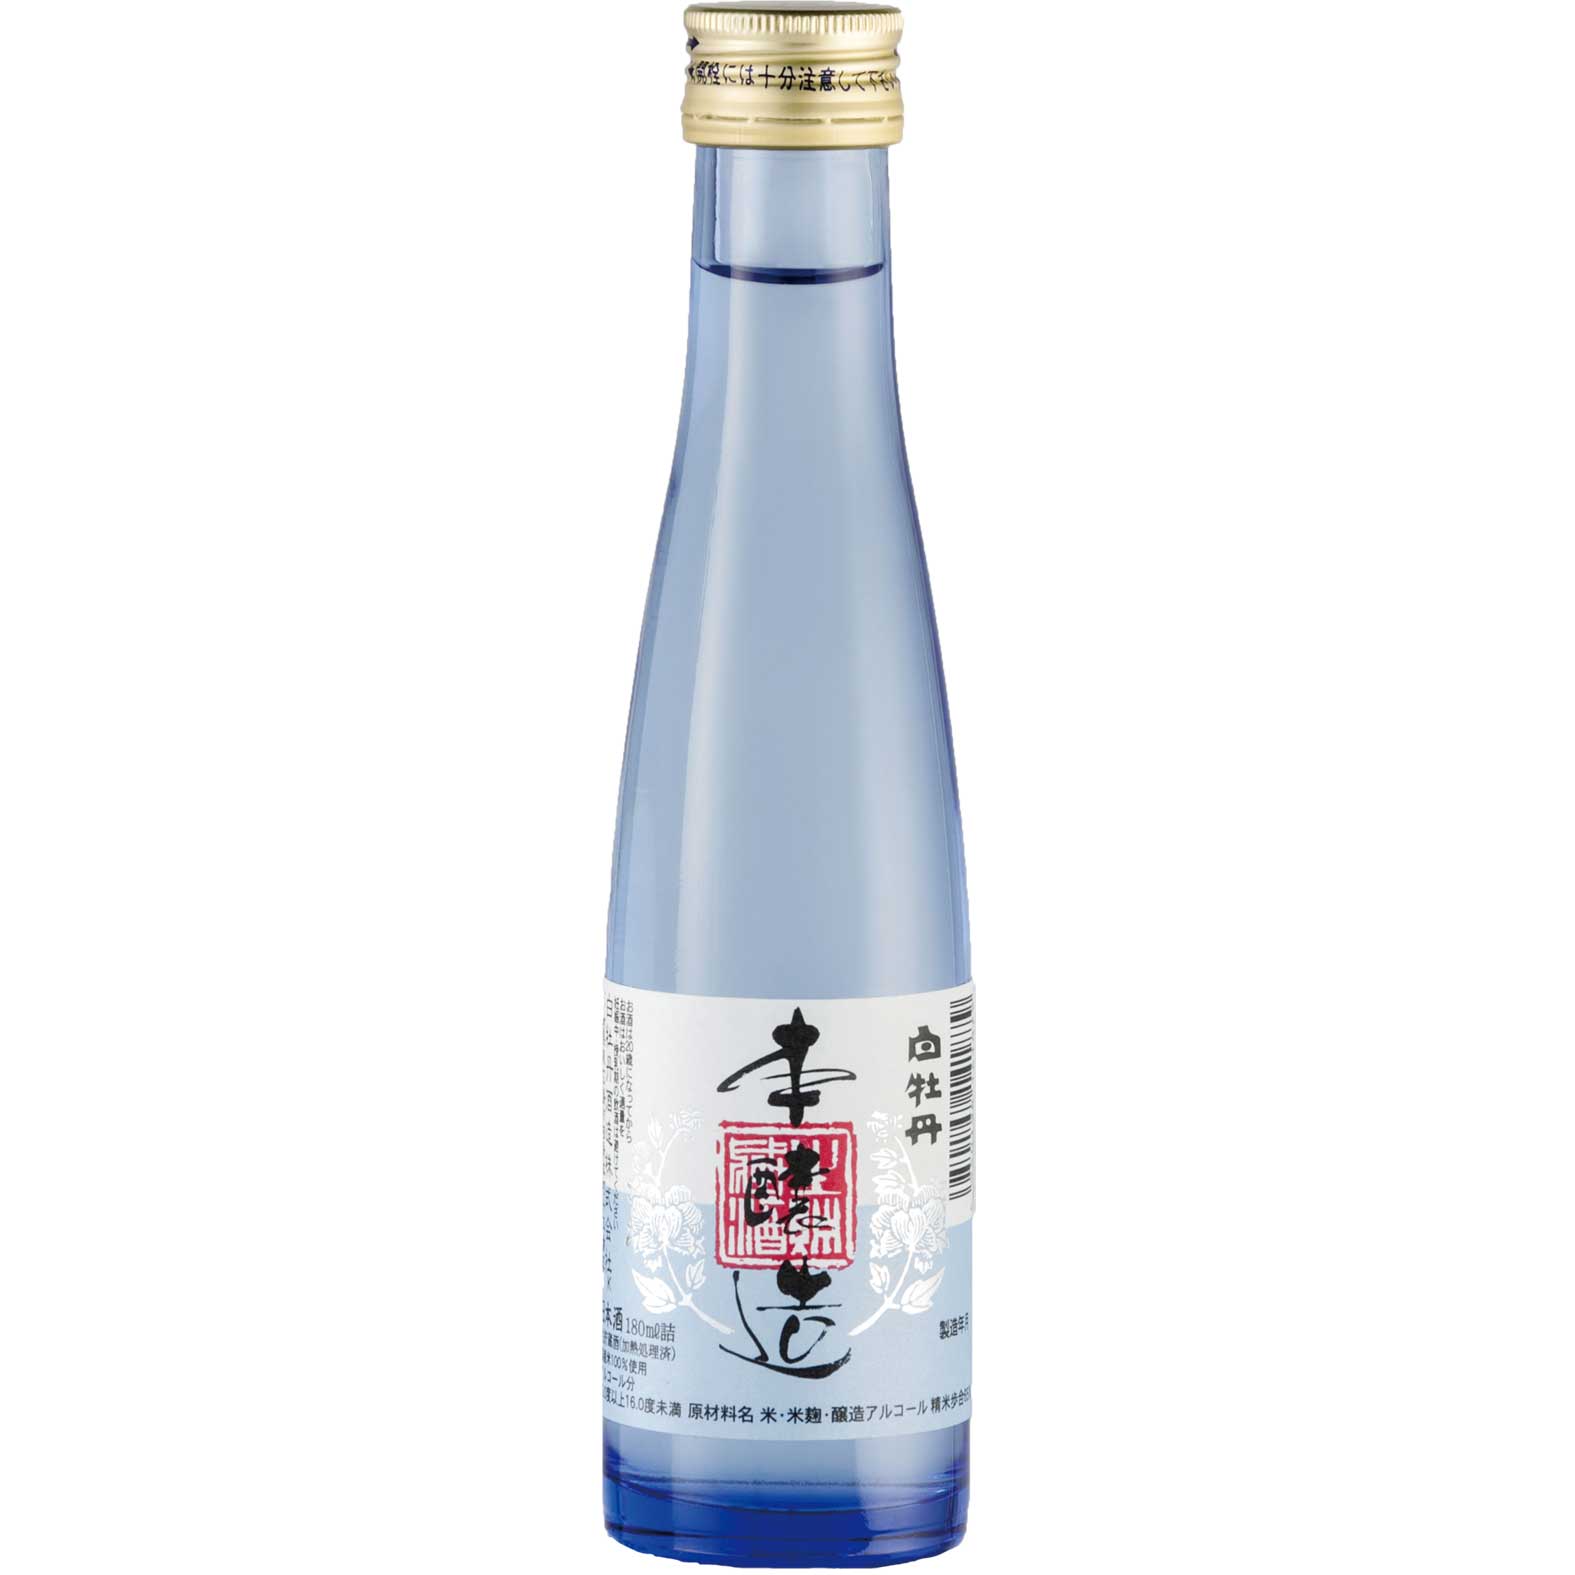 【日本酒 白牡丹】本醸造 生貯蔵酒 180ml瓶詰